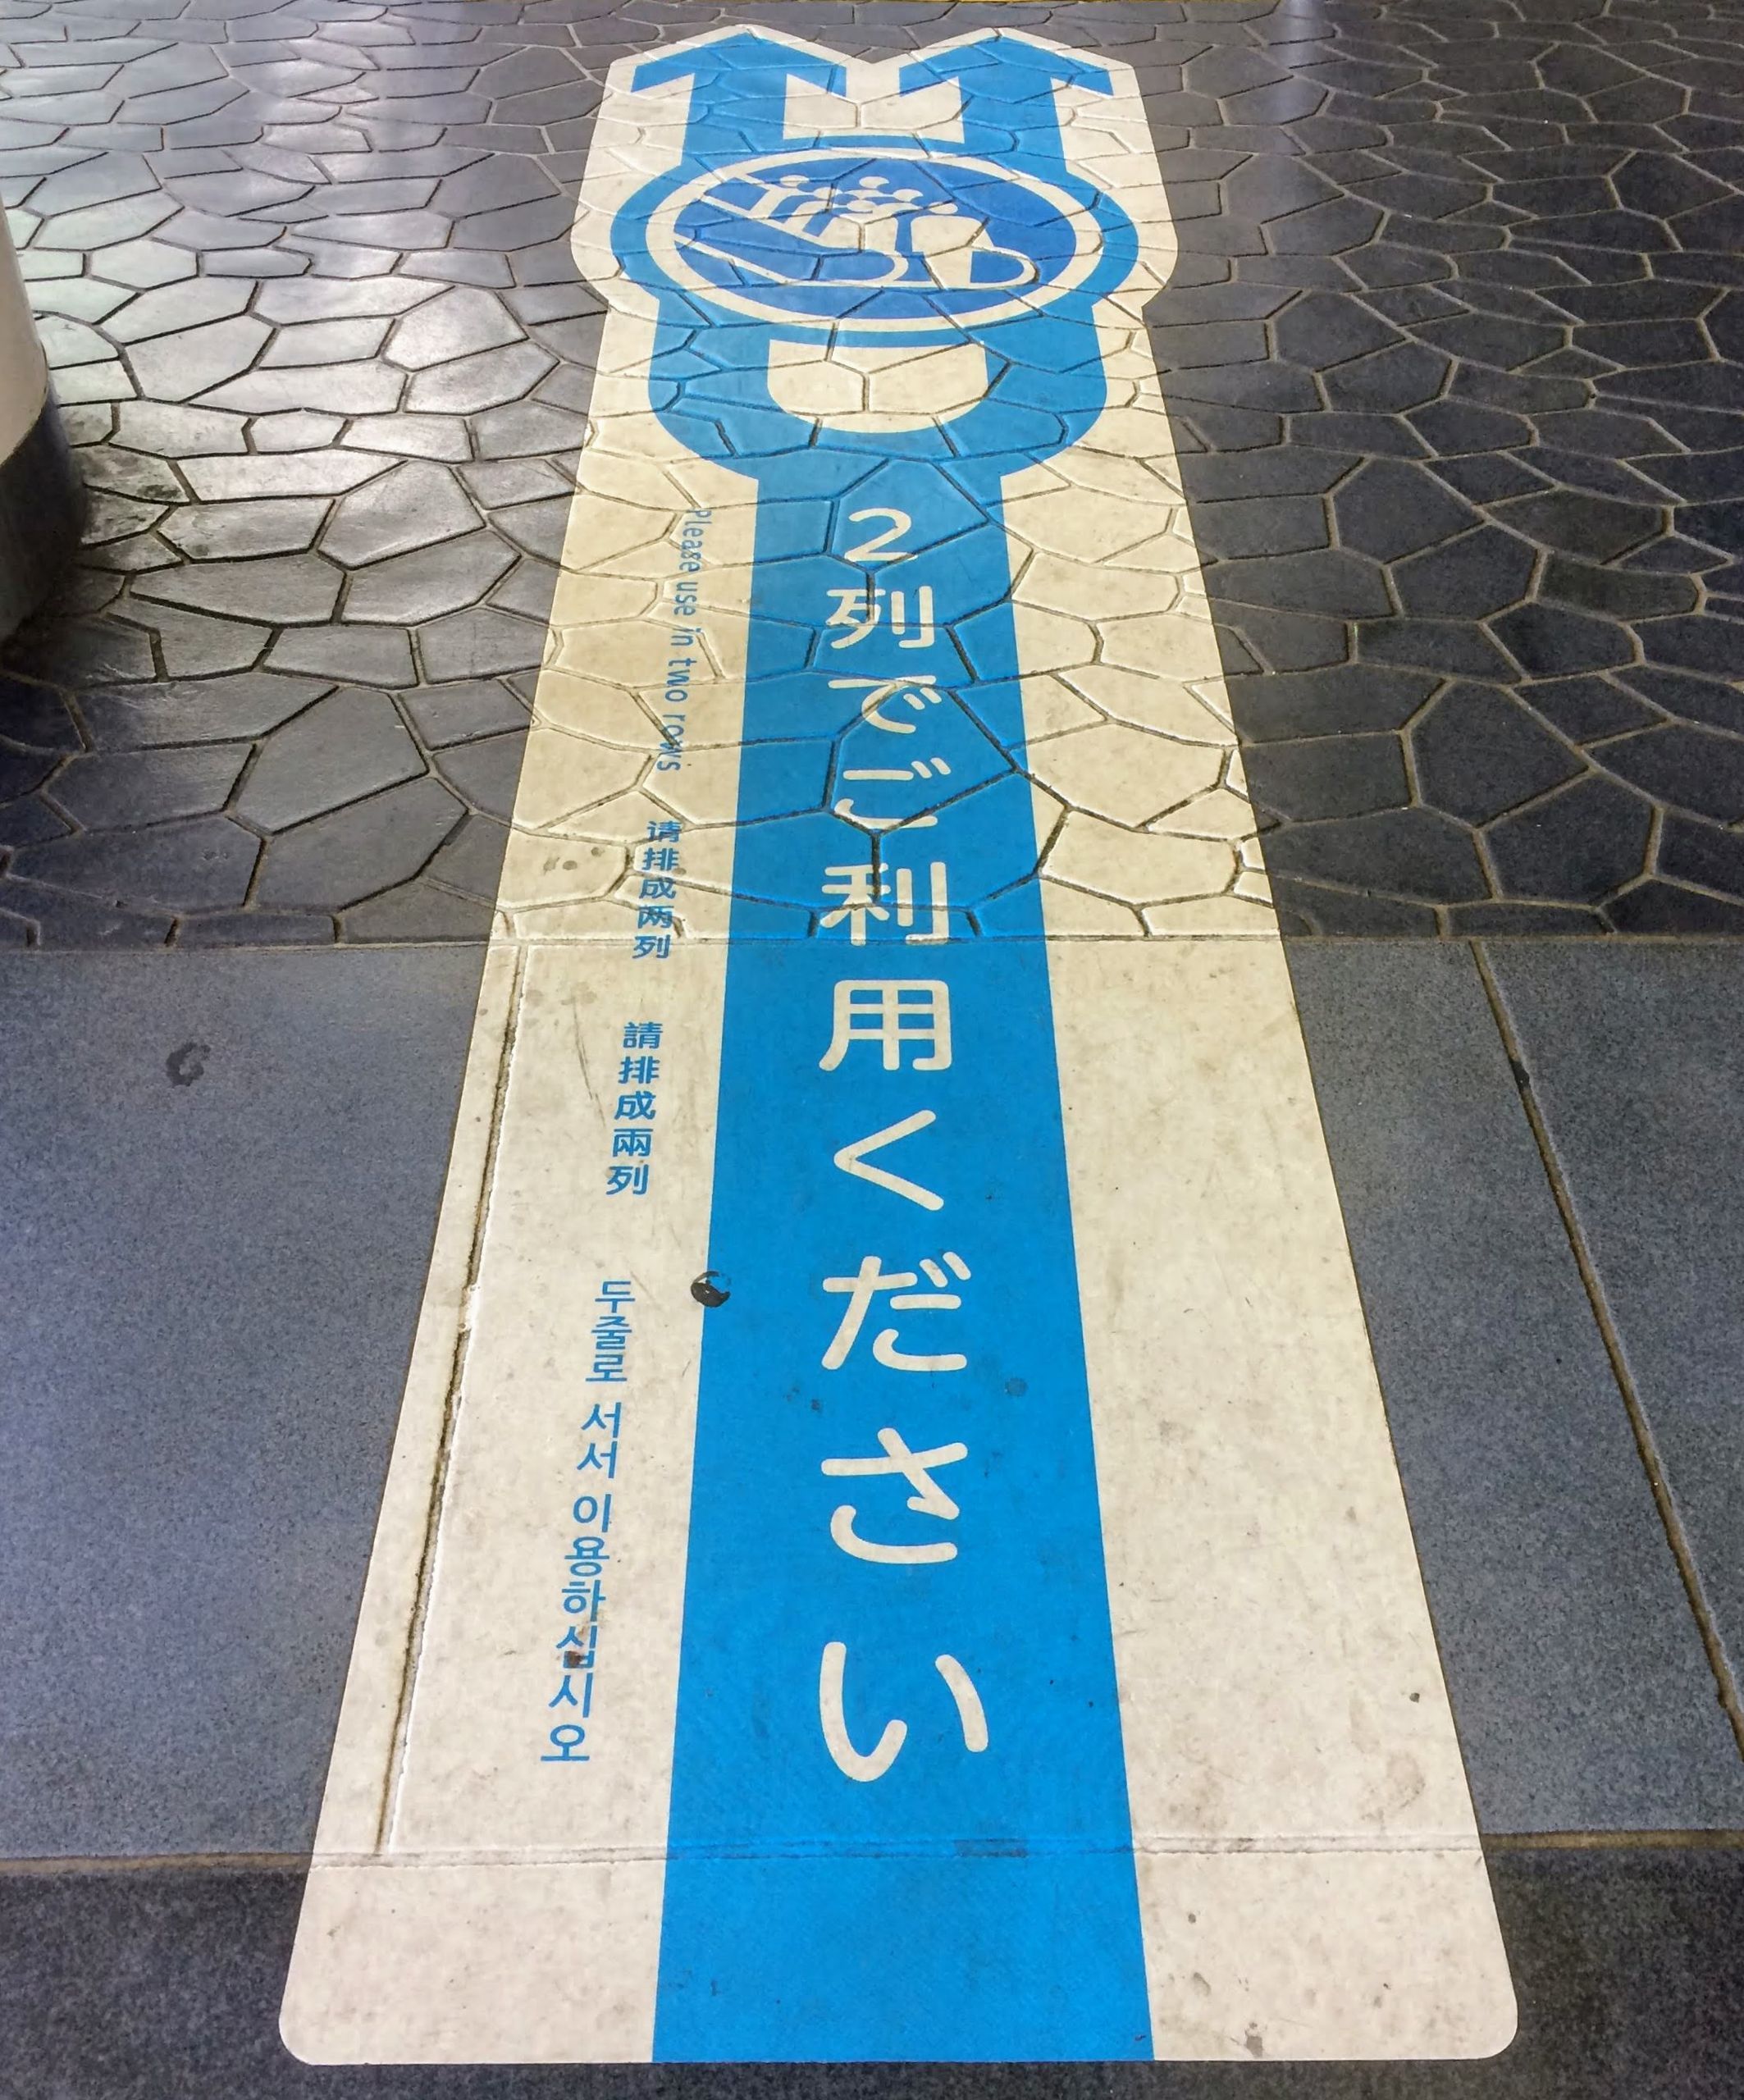 小田急線では、エスカレーターの2列乗車を、単なる啓発ポスターだけではなく、駅構内表示でも推奨し始めている。